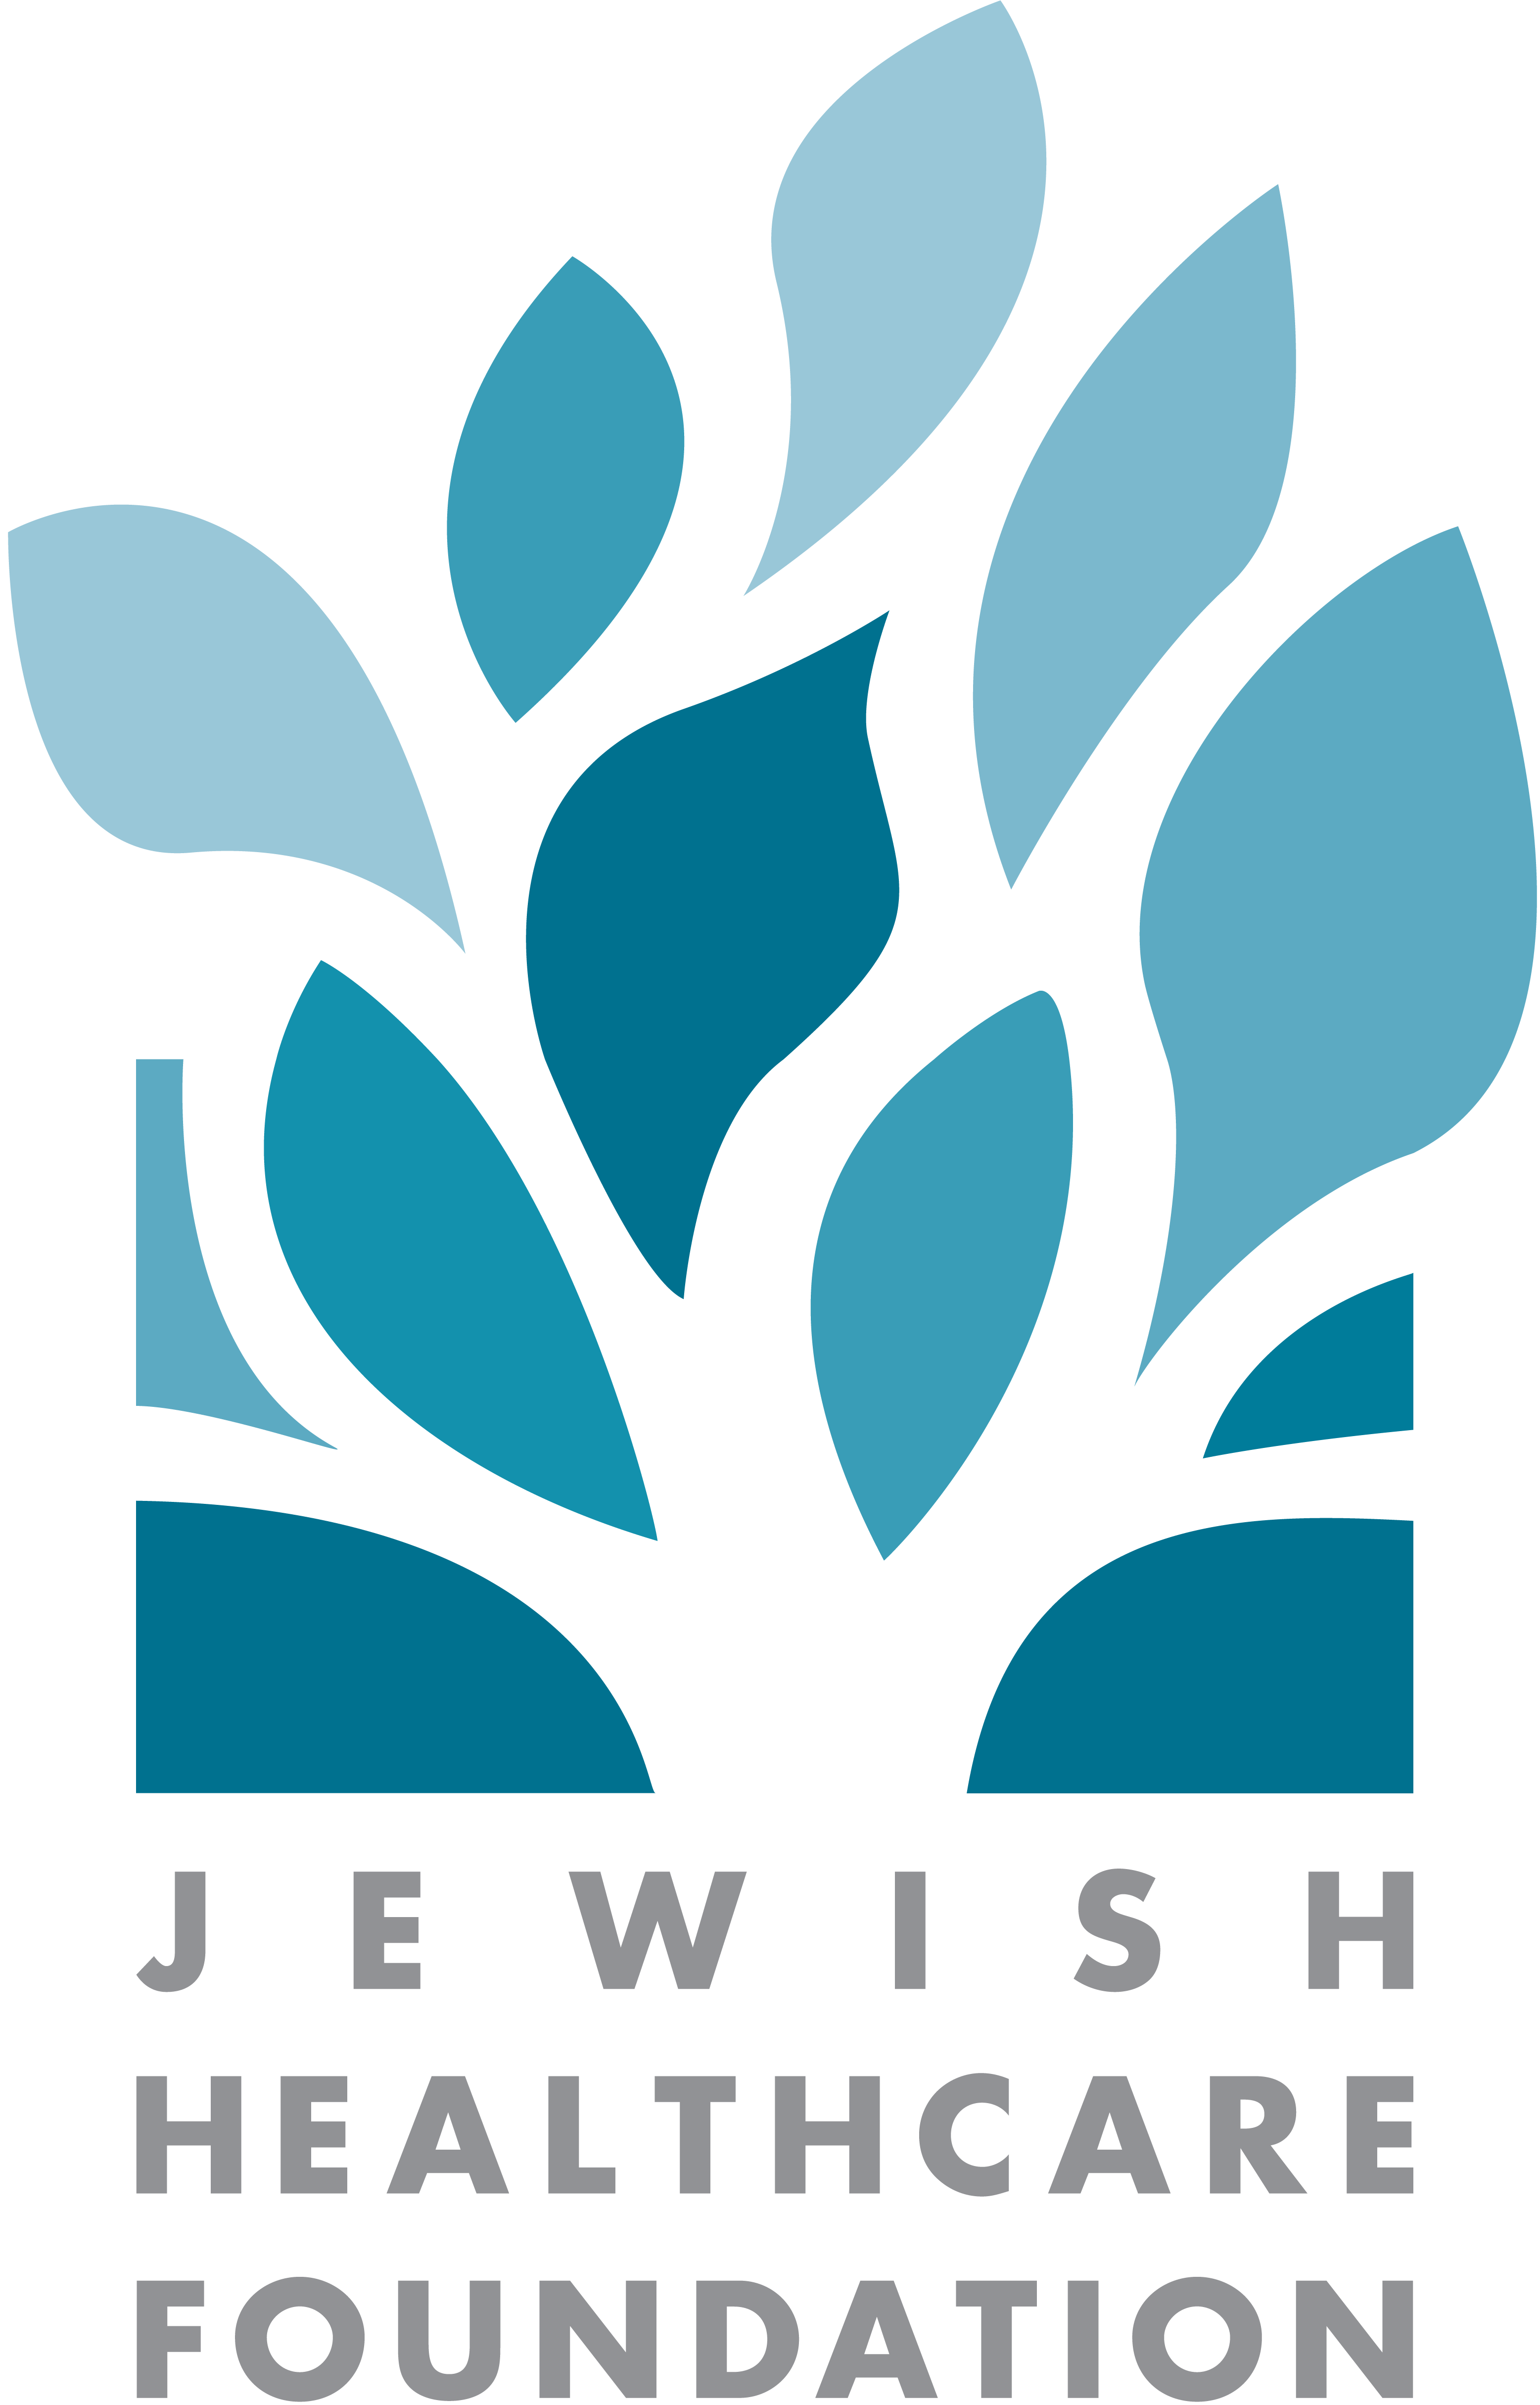 犹太保健基金会